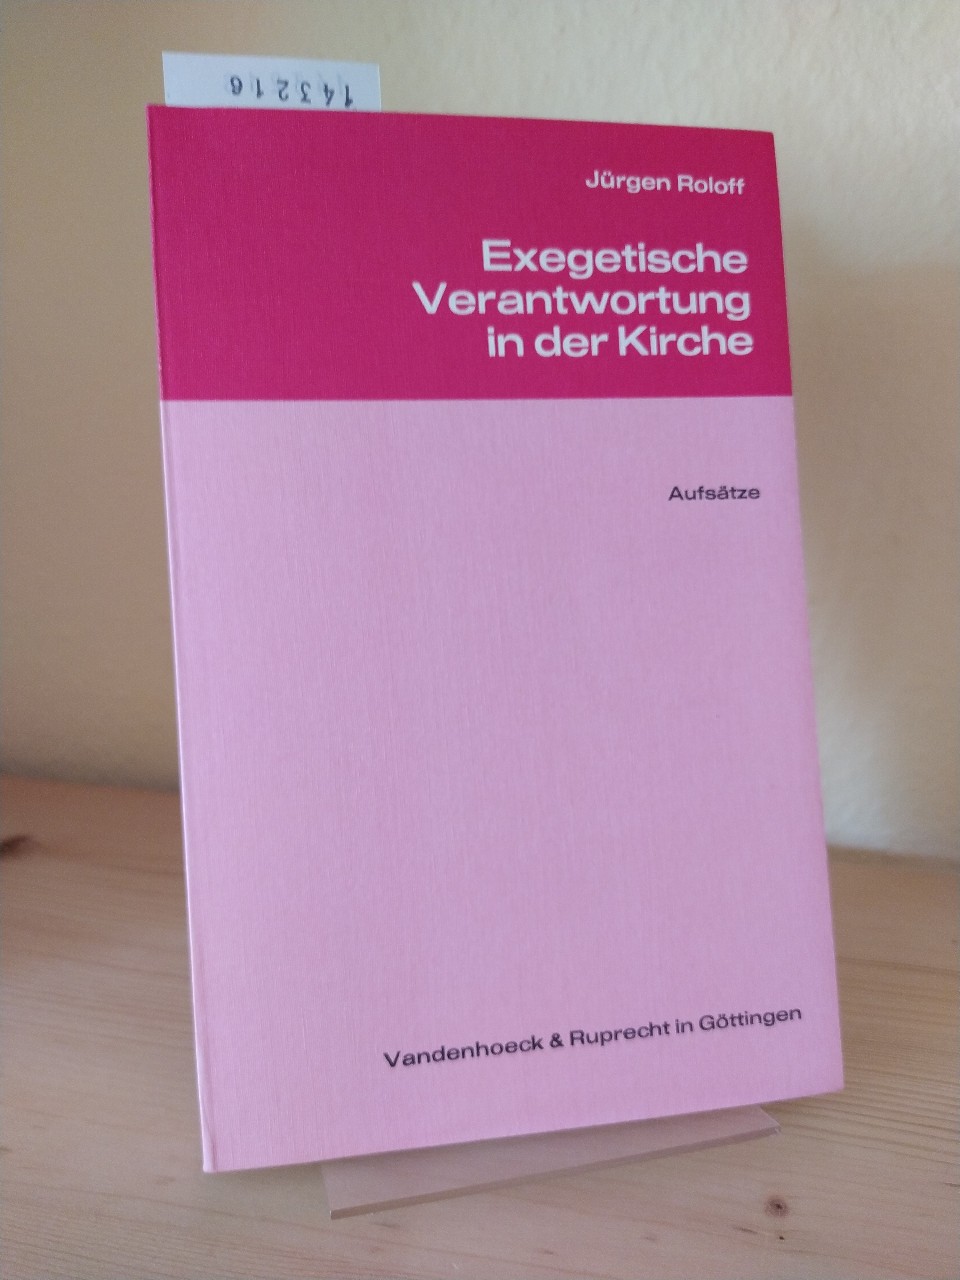 Exegetische Verantwortung in der Kirche. Aufsätze. [Von Jürgen Roloff]. Herausgegeben von Martin Karrer. - Roloff, Jürgen